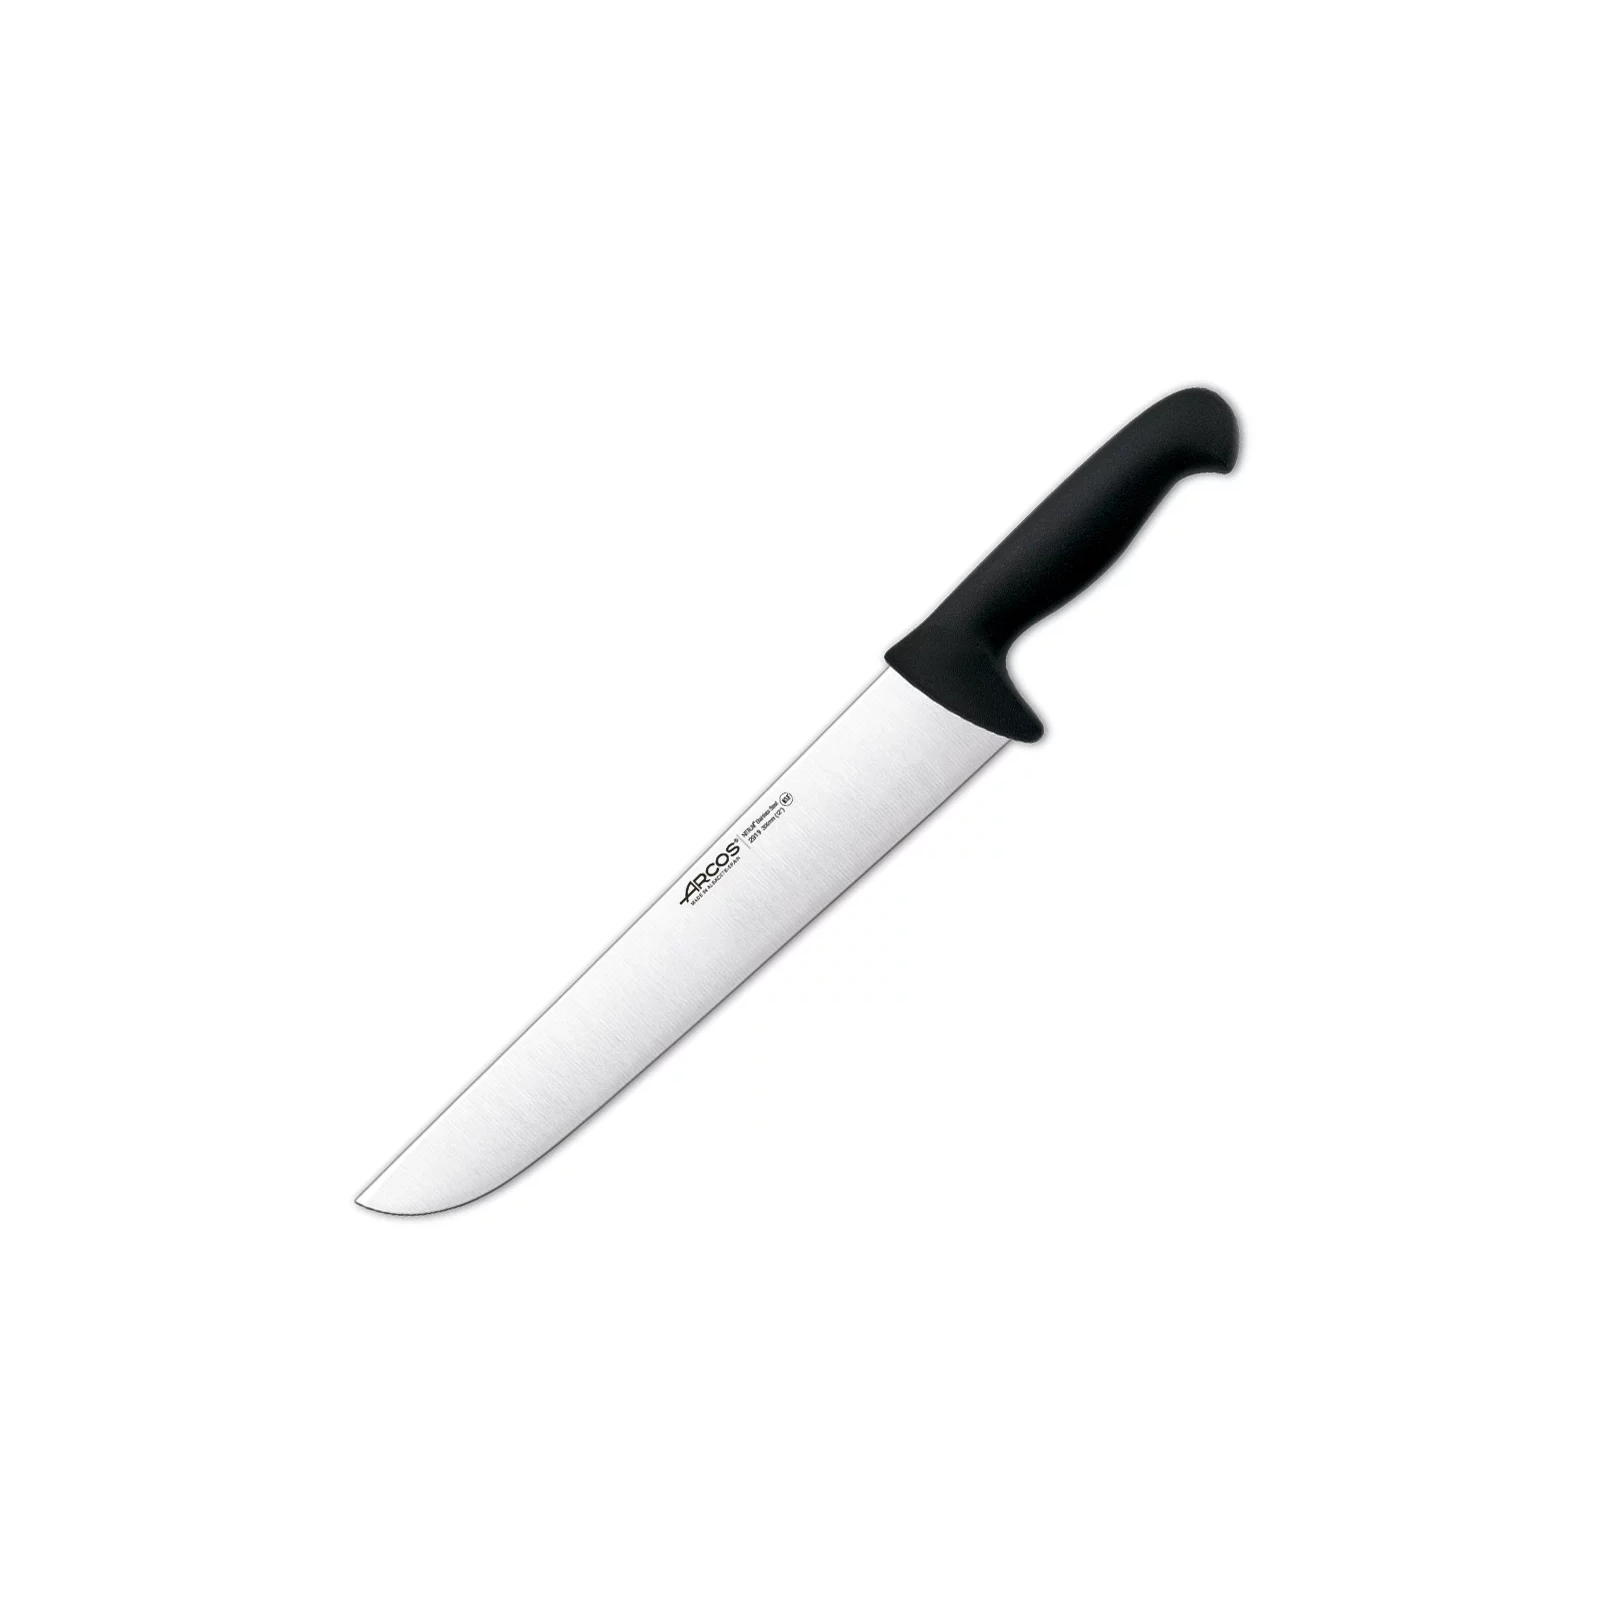 Кухонный нож Arcos серія "2900" для обробки м'яса 300 мм Синій (291923)